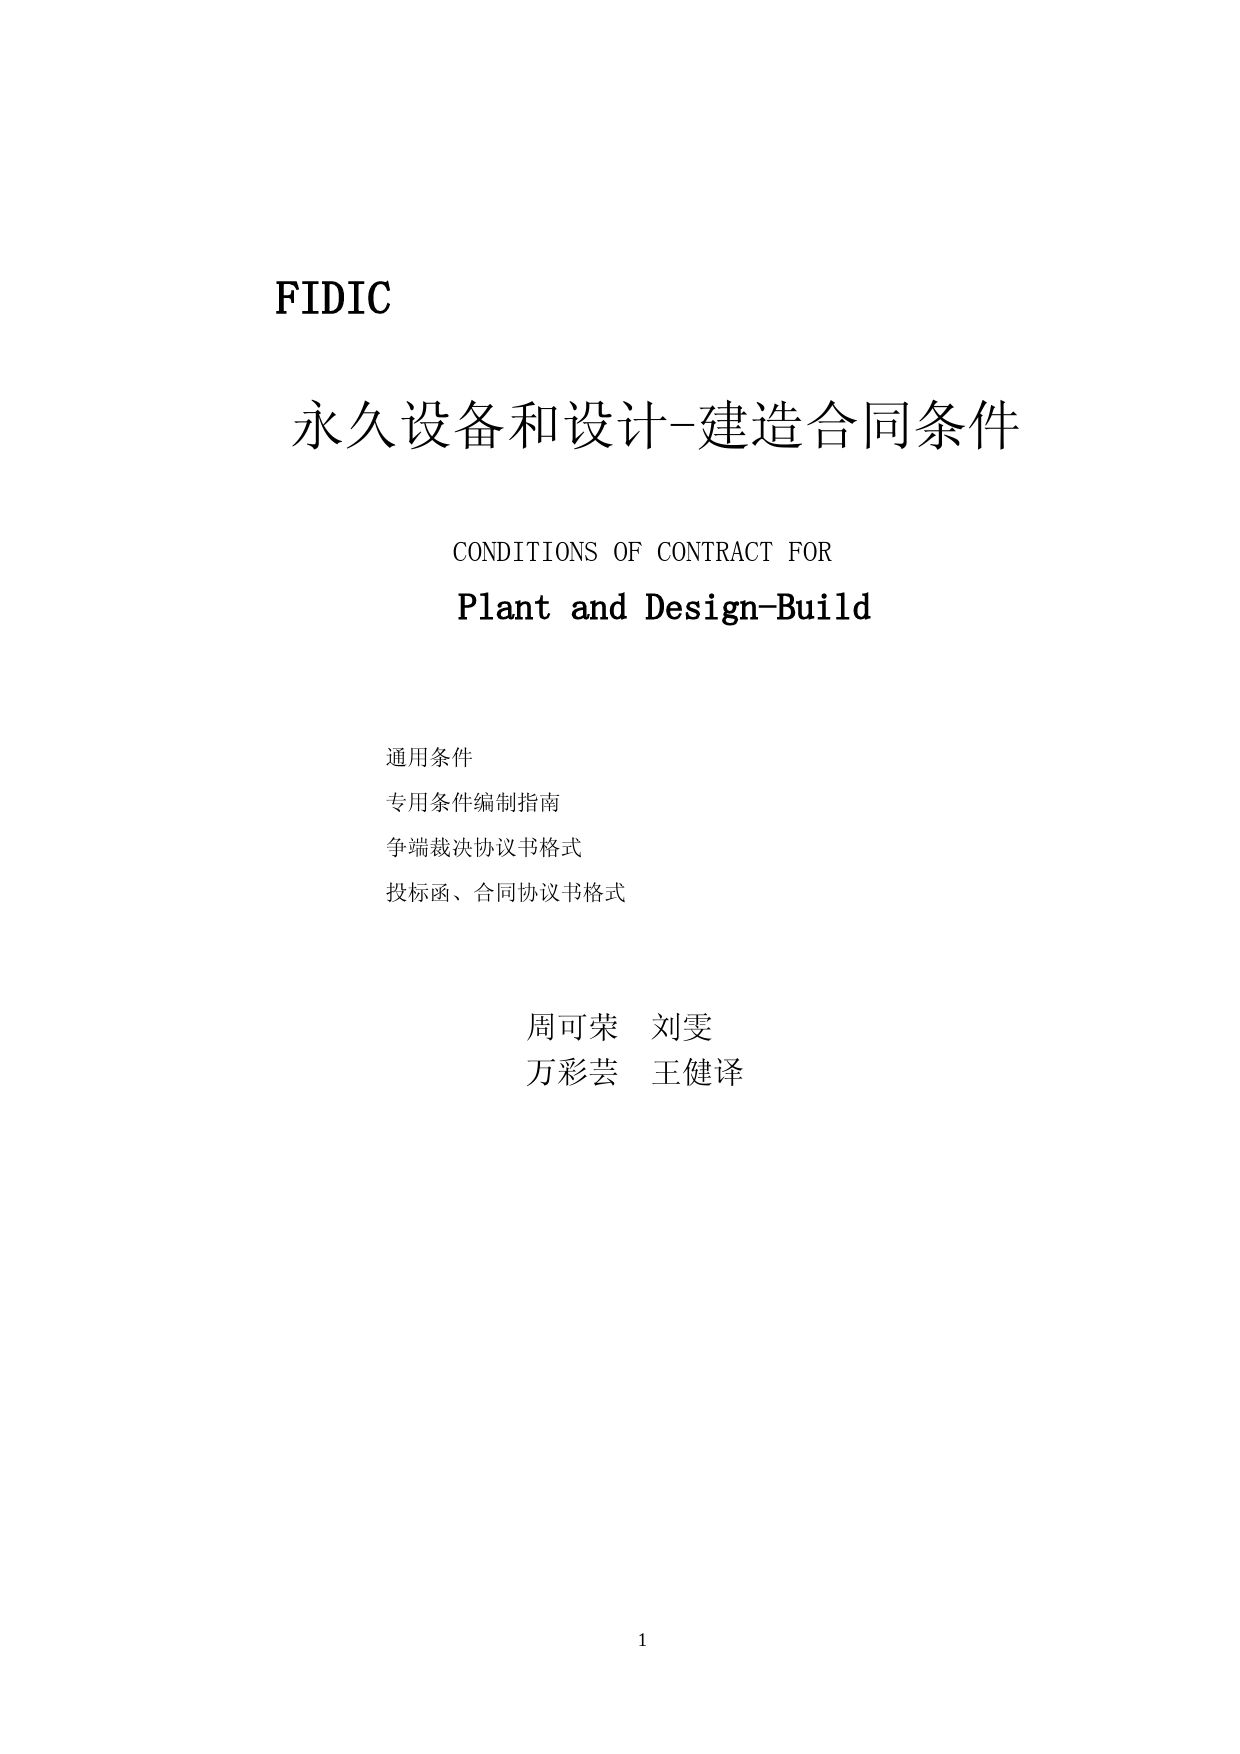 (新版黄皮书)FIDIC永久设备和设计建造合同条款